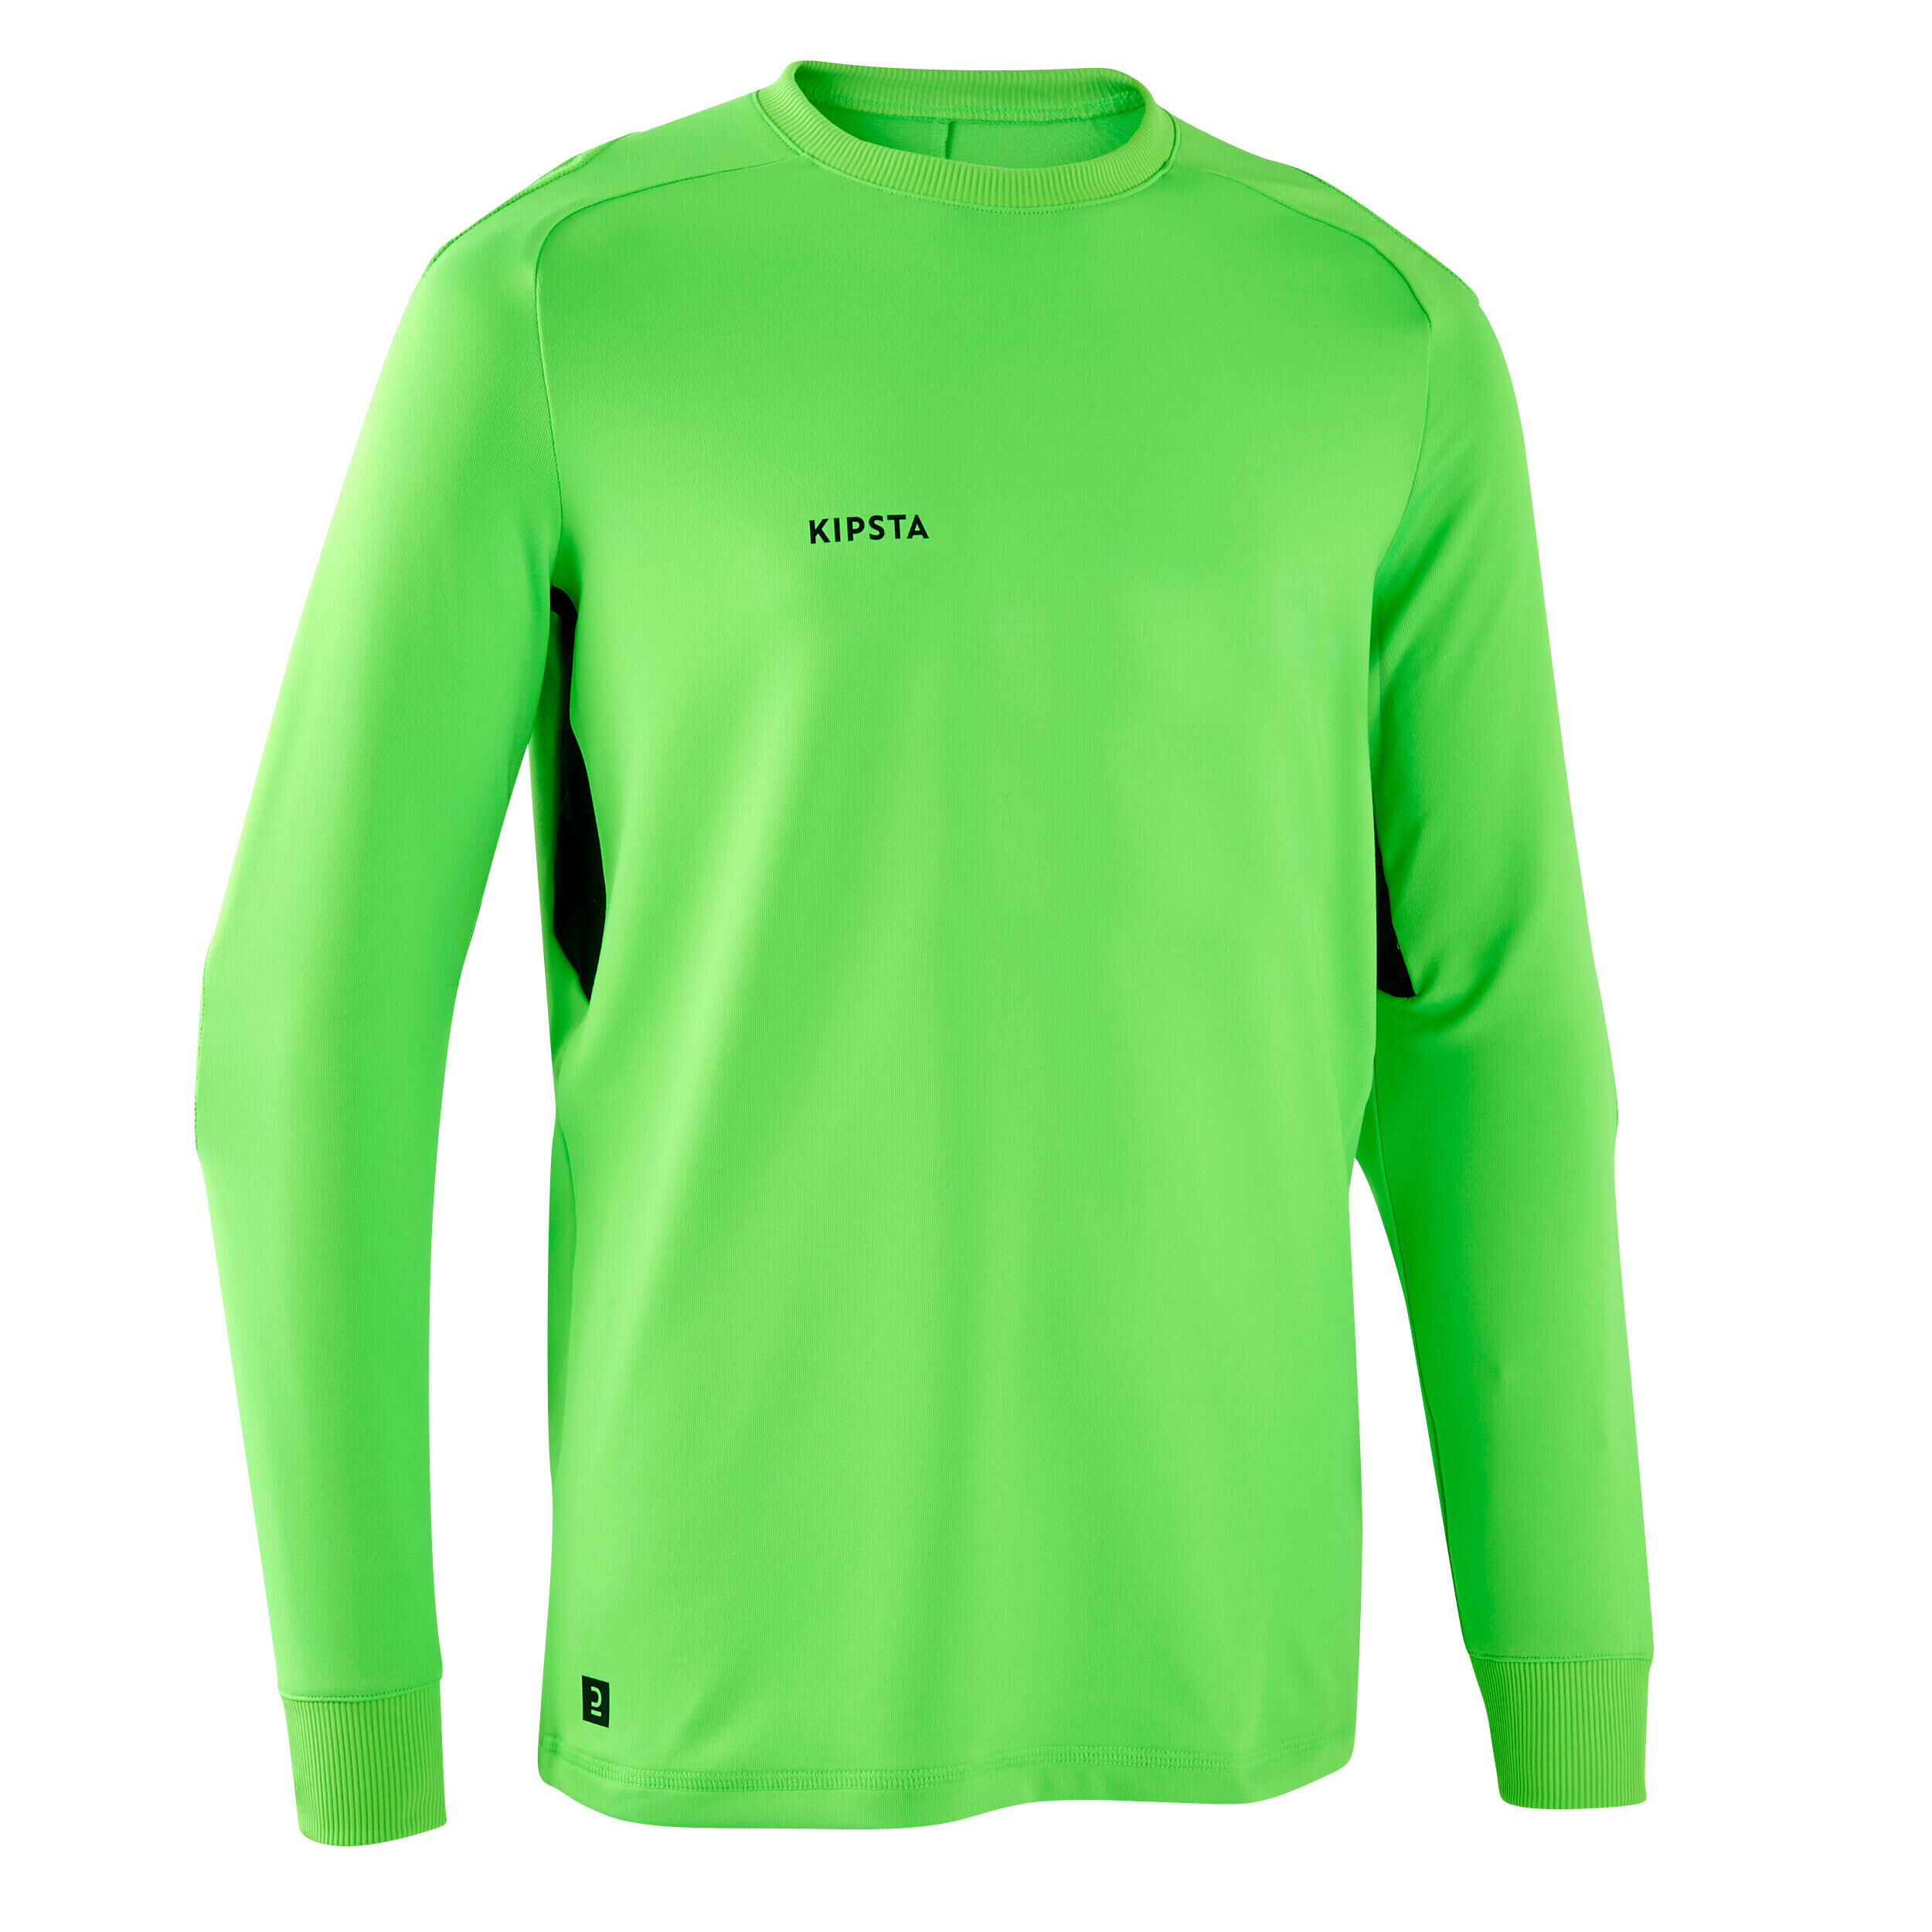 KIPSTA F100 Kids' Football Goalkeeper Shirt - Green